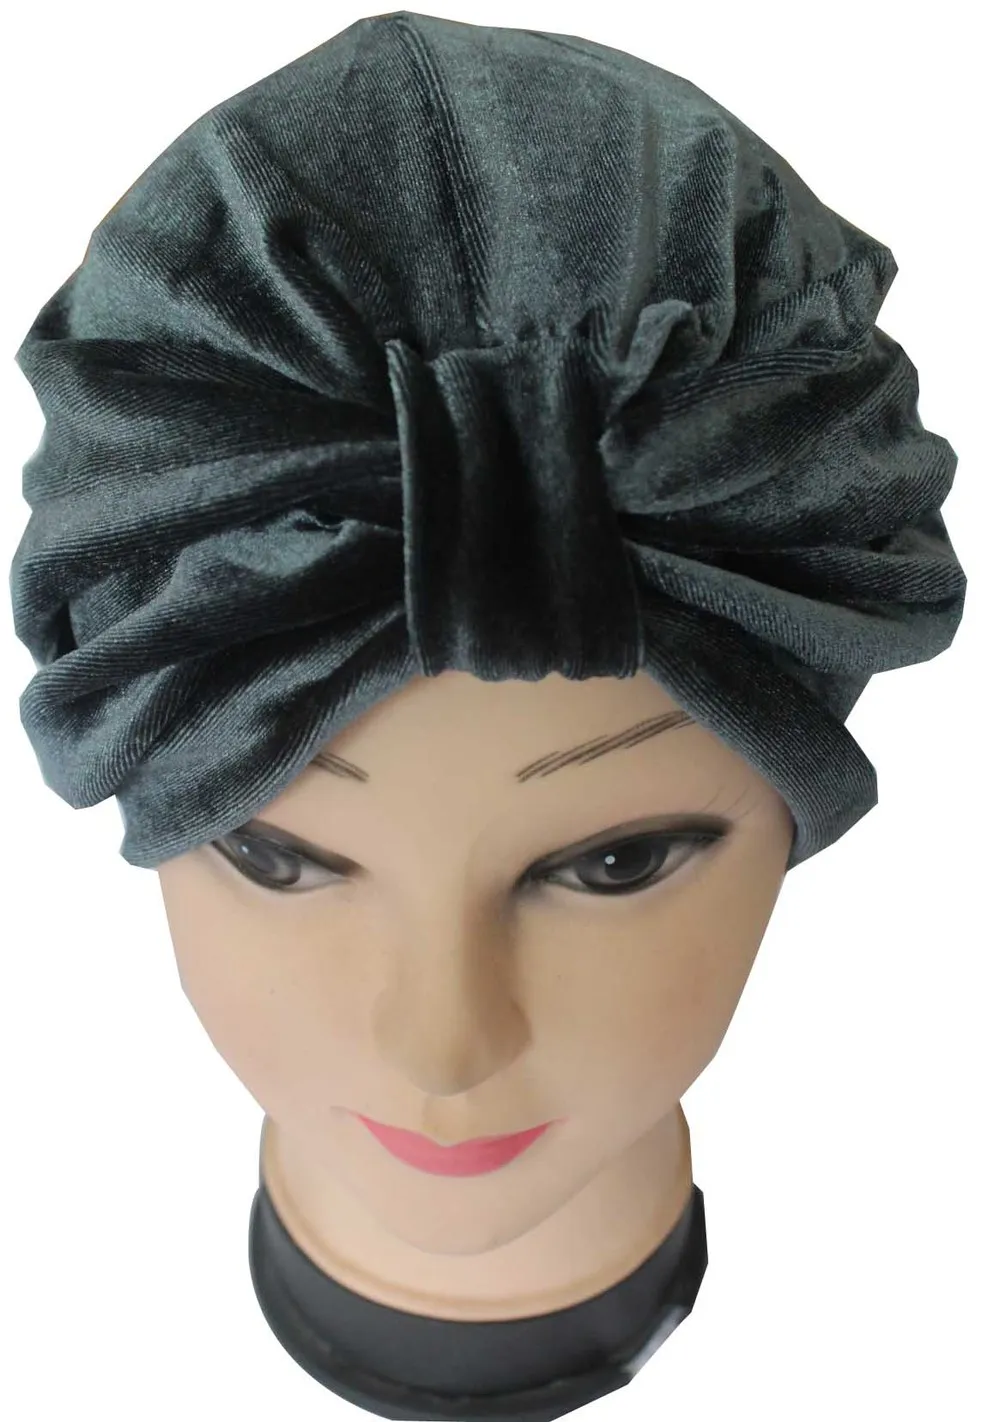 FOXMOTHER новая зимняя мода черный бархат мусульманский тюрбан после химиотерапии шапки женские - Цвет: Темно-серый